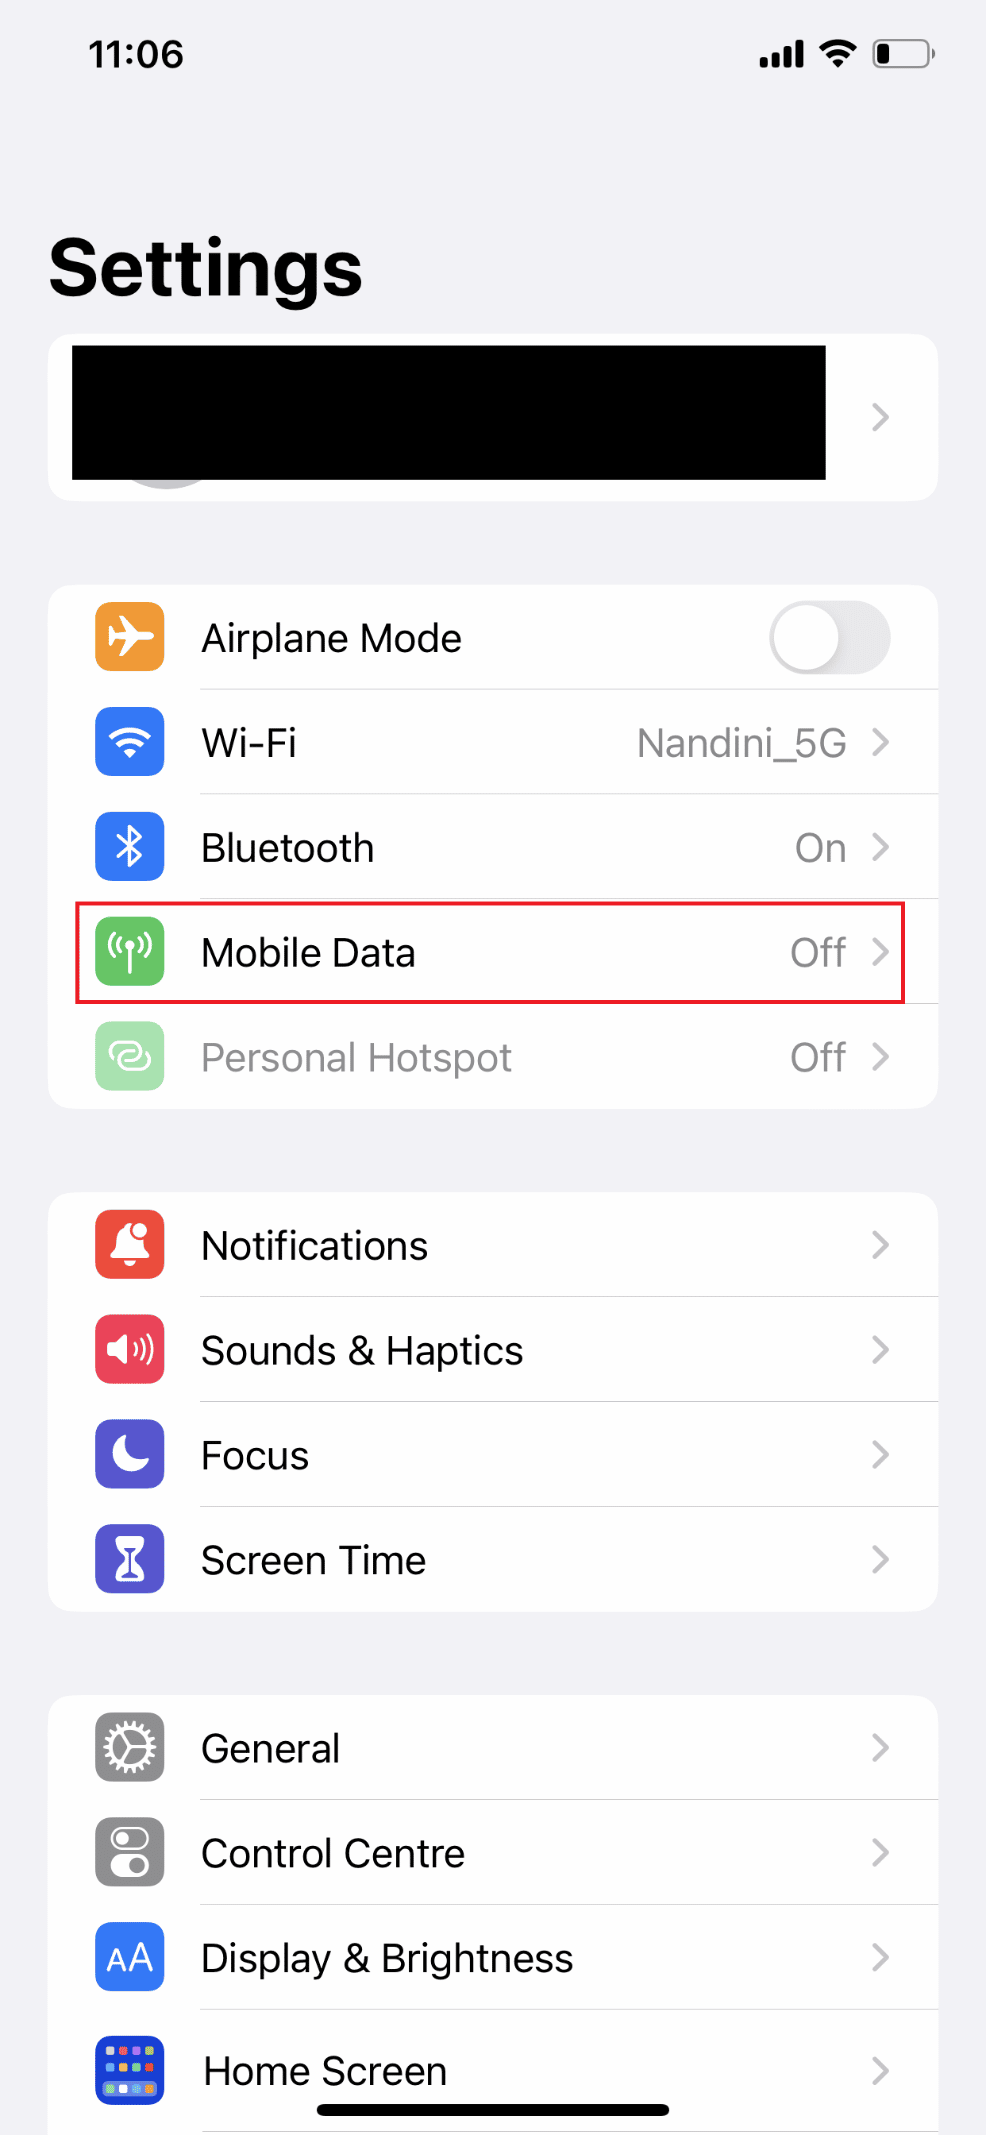 Select Mobile Data 